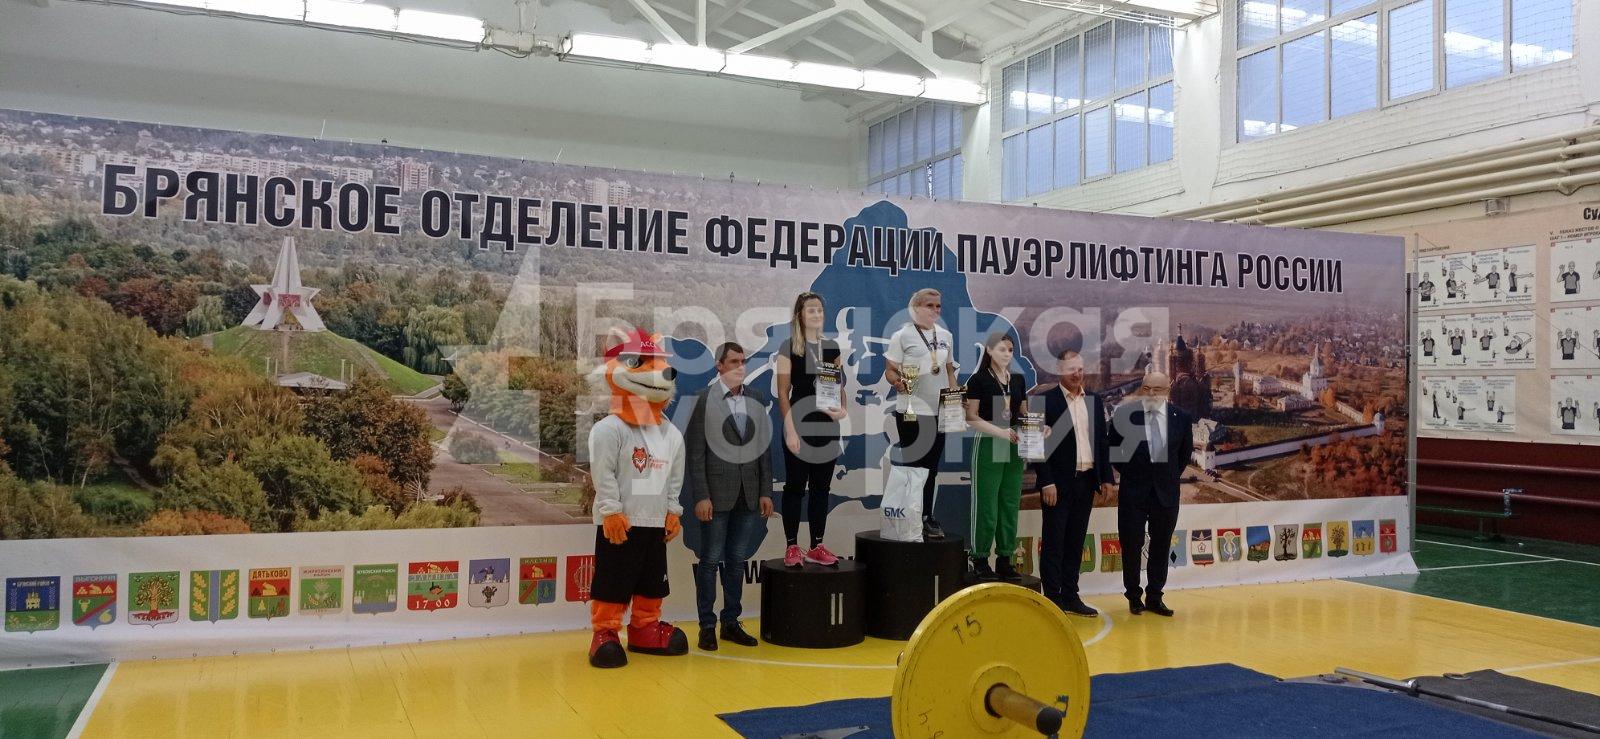 Чемпионкой Брянской области по классическому троеборью стала Оксана Петрушина